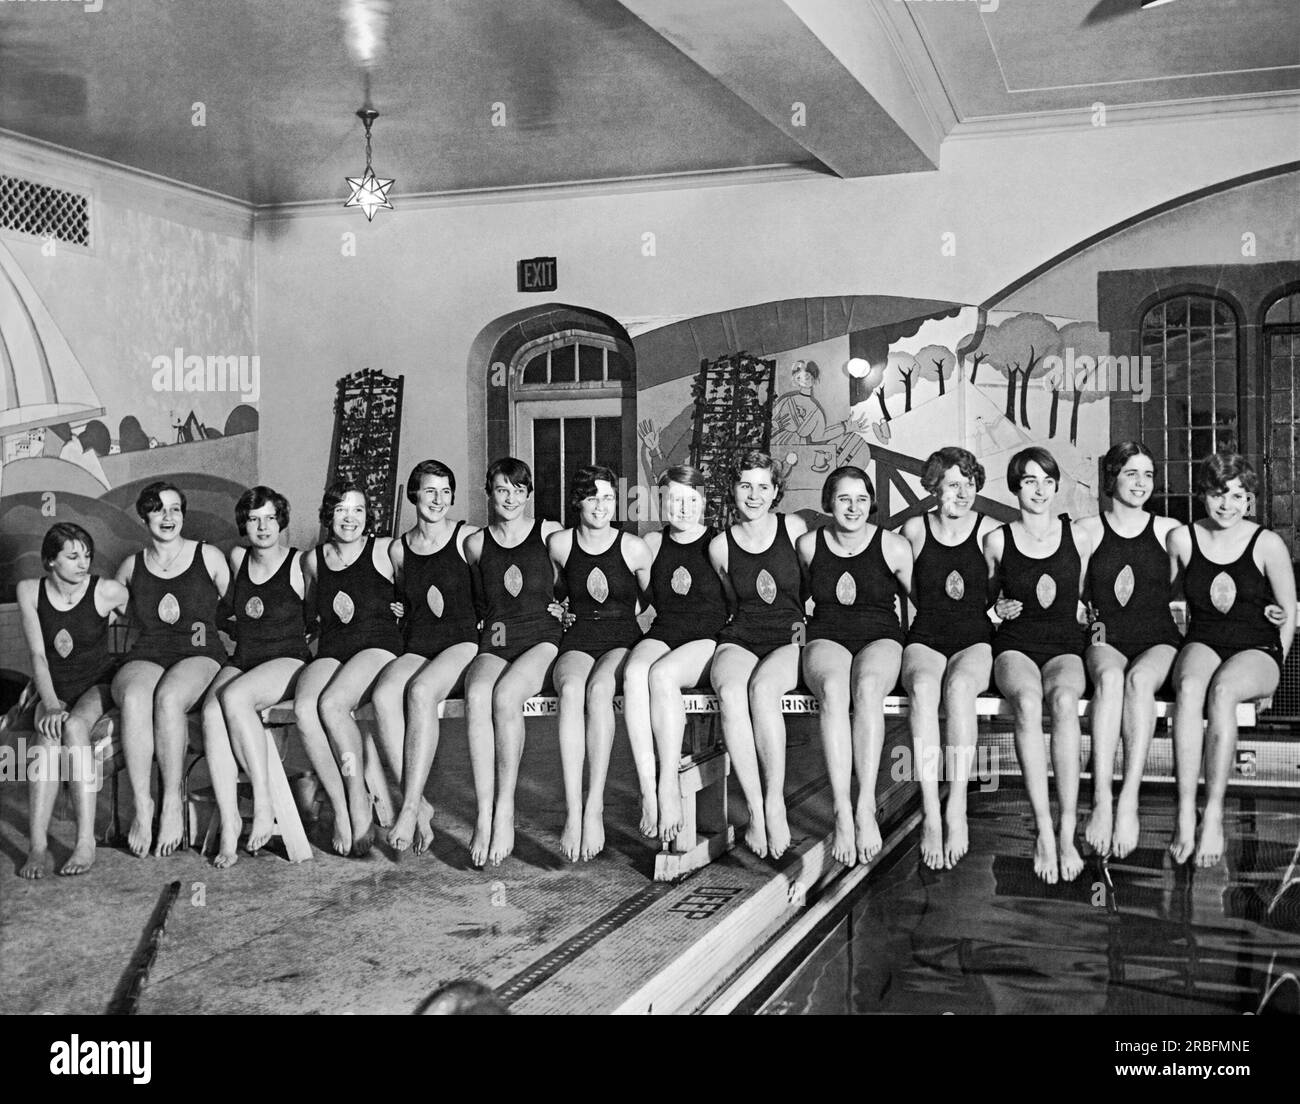 Chicago, Illinois : 26 janvier 1929 Un portrait des membres de l'équipe de natation de l'Illinois Women's Athletic Club qui défendront leurs honneurs de championnat lors des championnats nationaux de natation pour femmes qui auront lieu le mois prochain au Lake Shore Athletic Club Banque D'Images